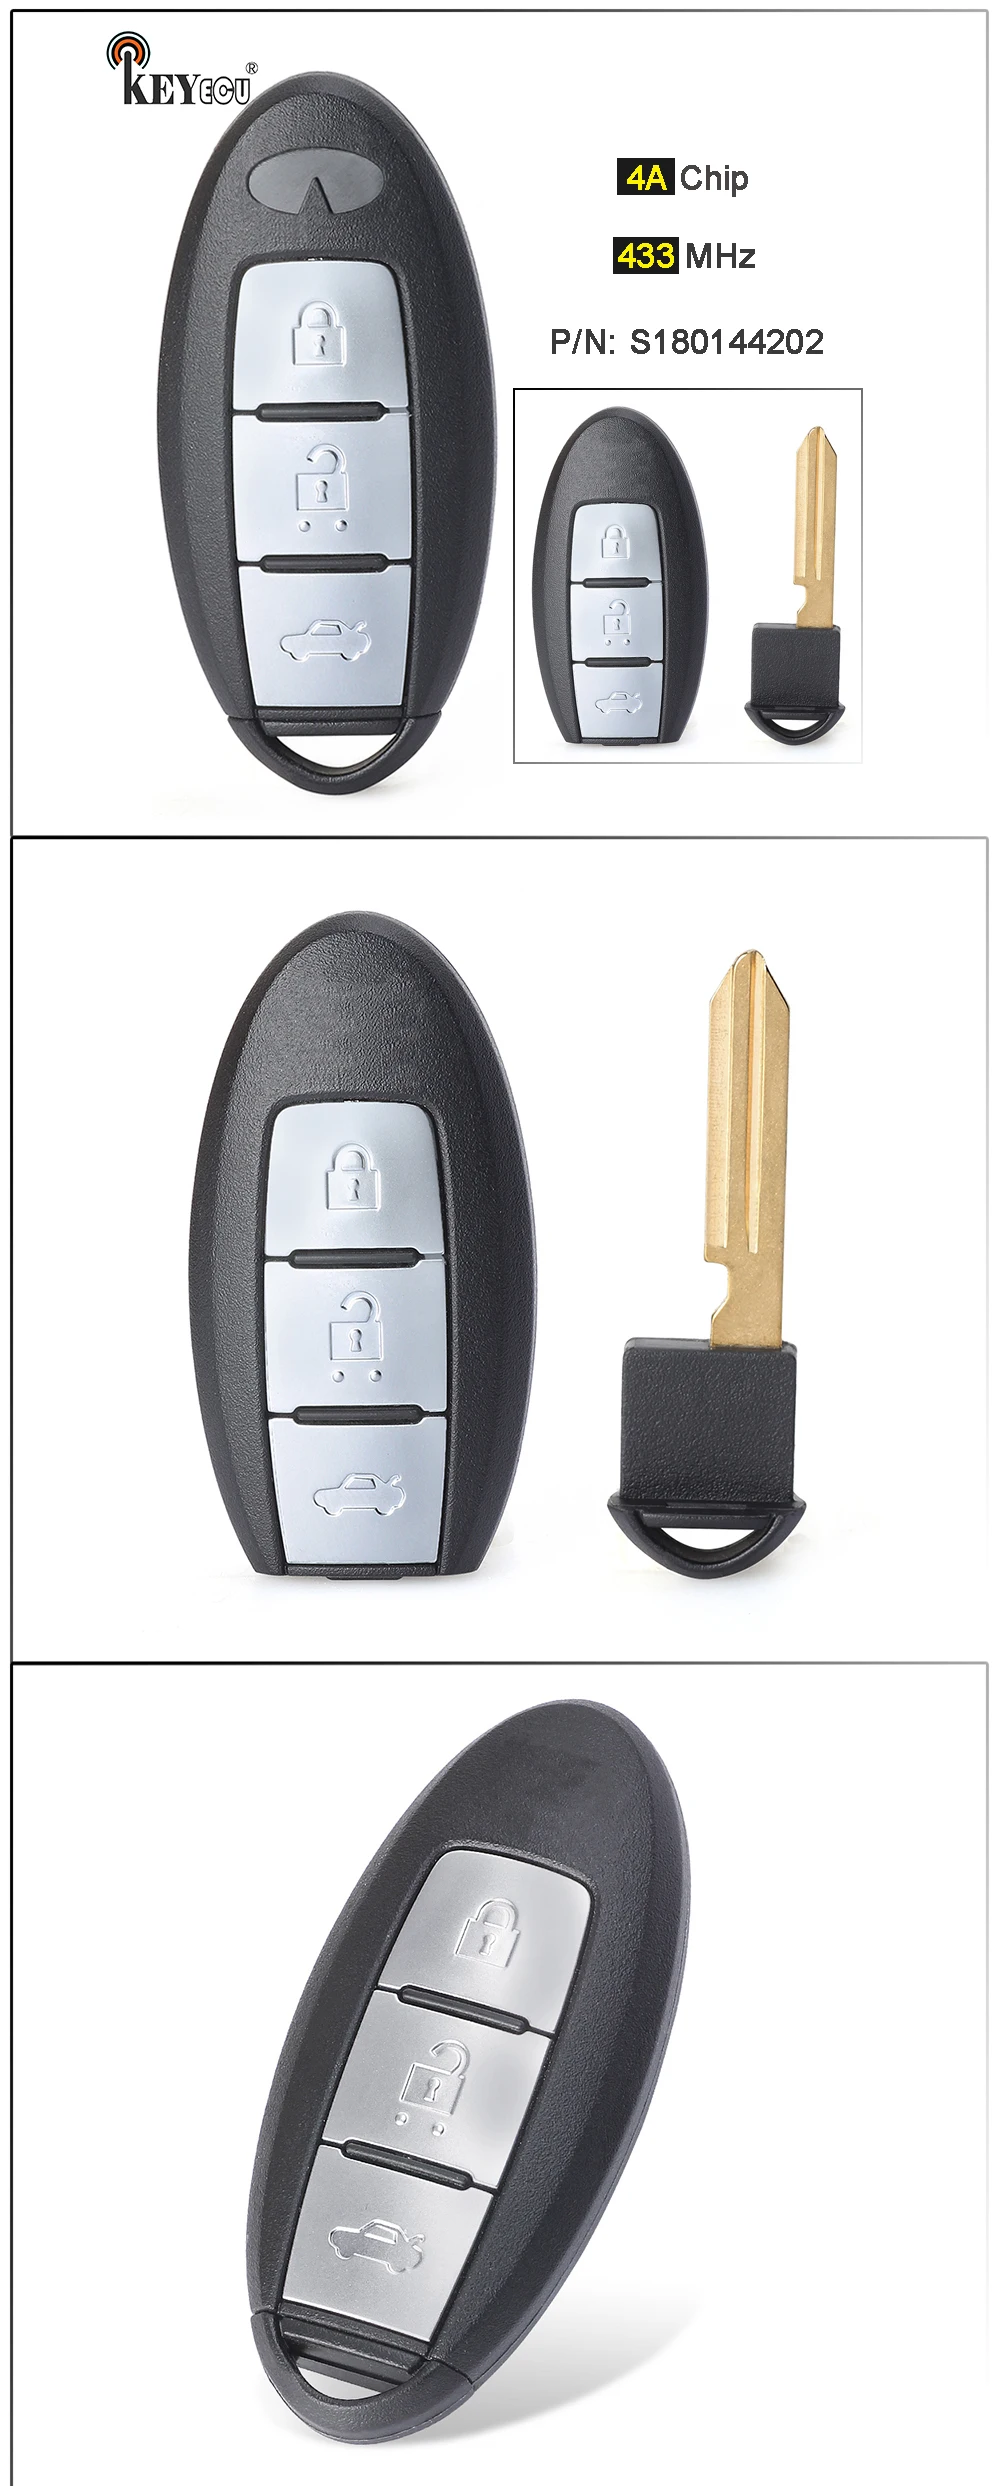 Keyecu 433mhz 4a Chip P/n: S180144202 Smart Remote Car Key 